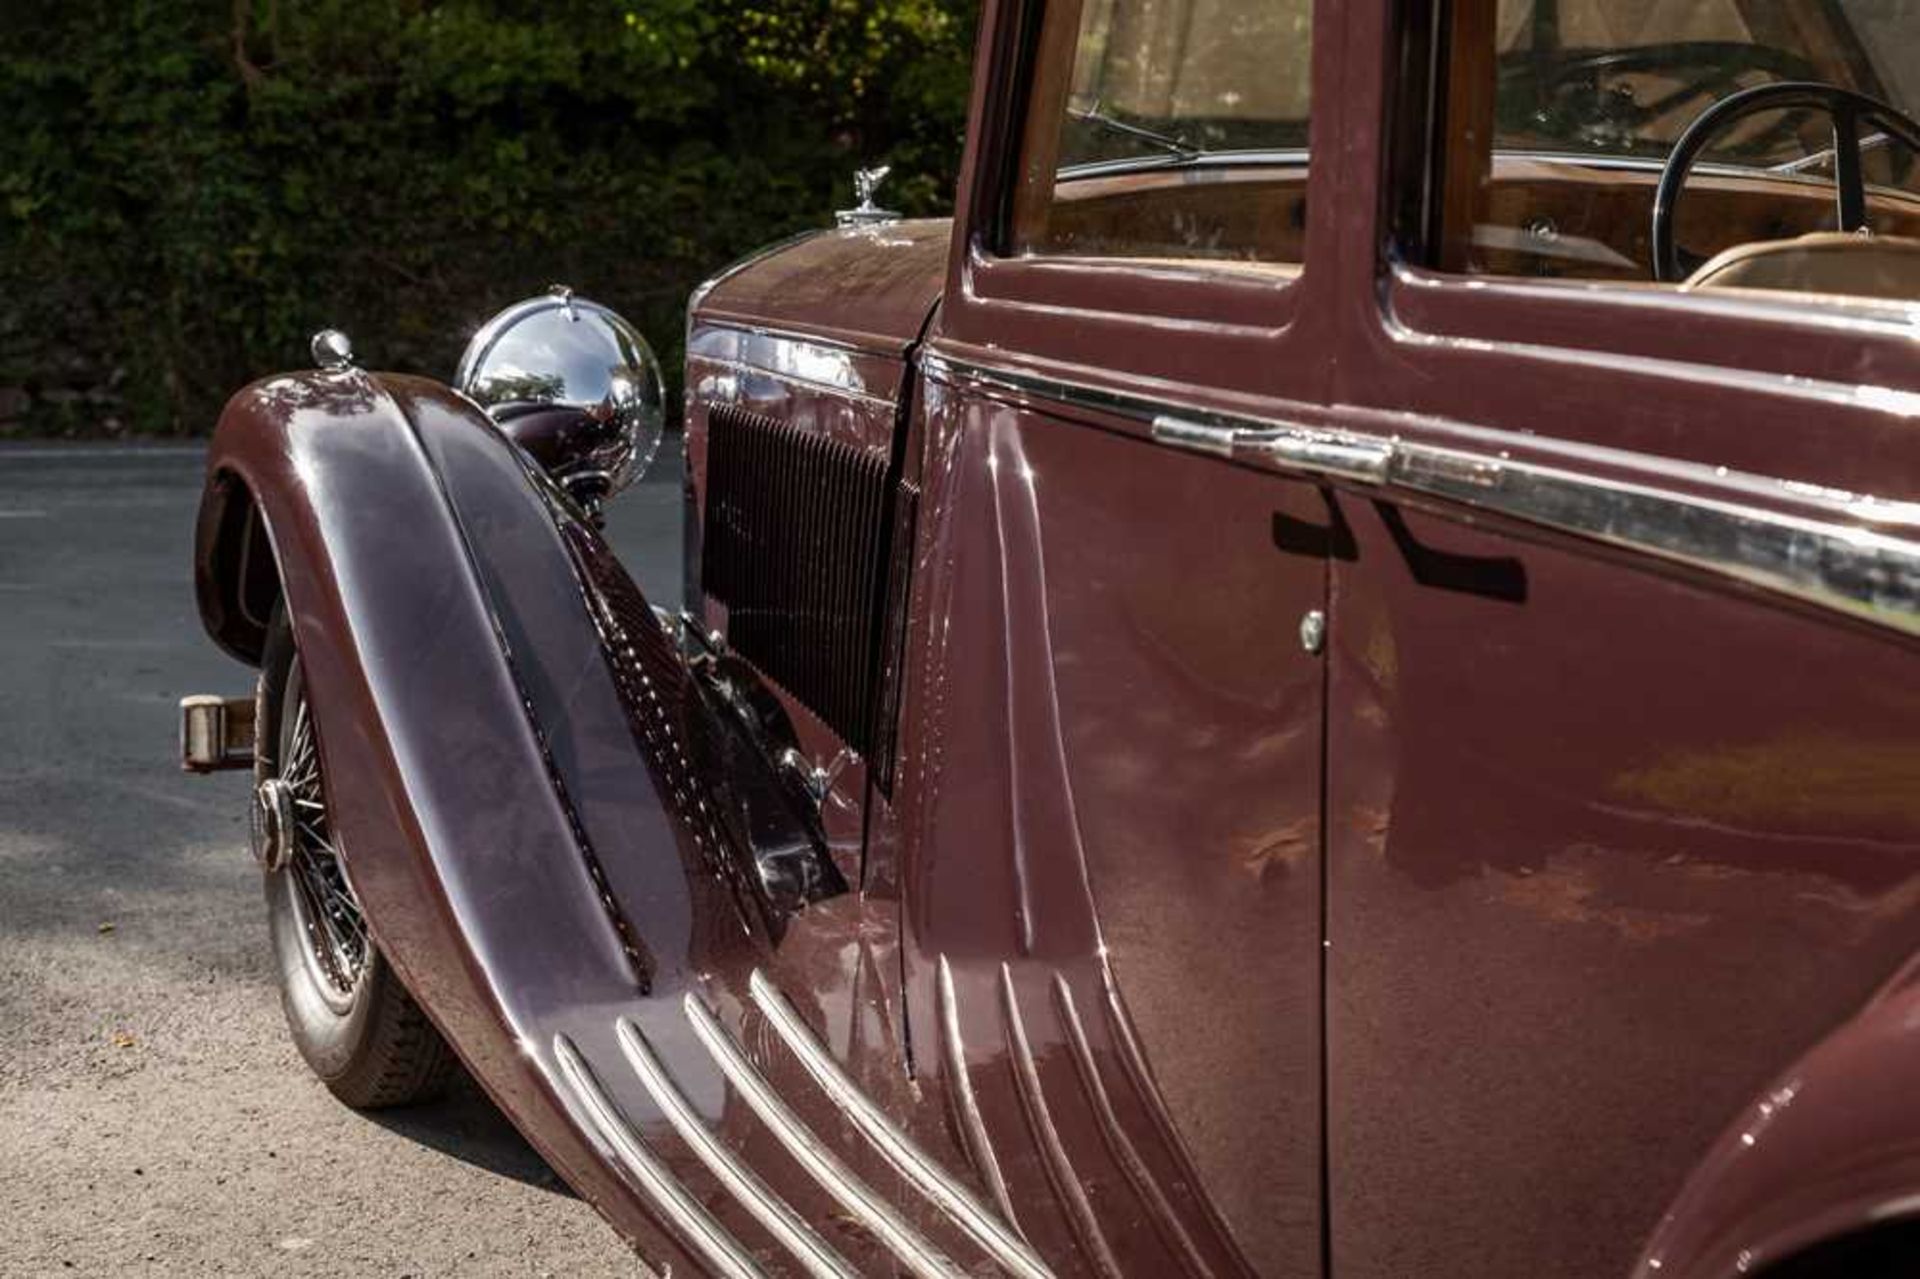 1937 Bentley 4.25 Litre Pillarless Sports Saloon Coachwork by Vanden Plas - Image 13 of 62